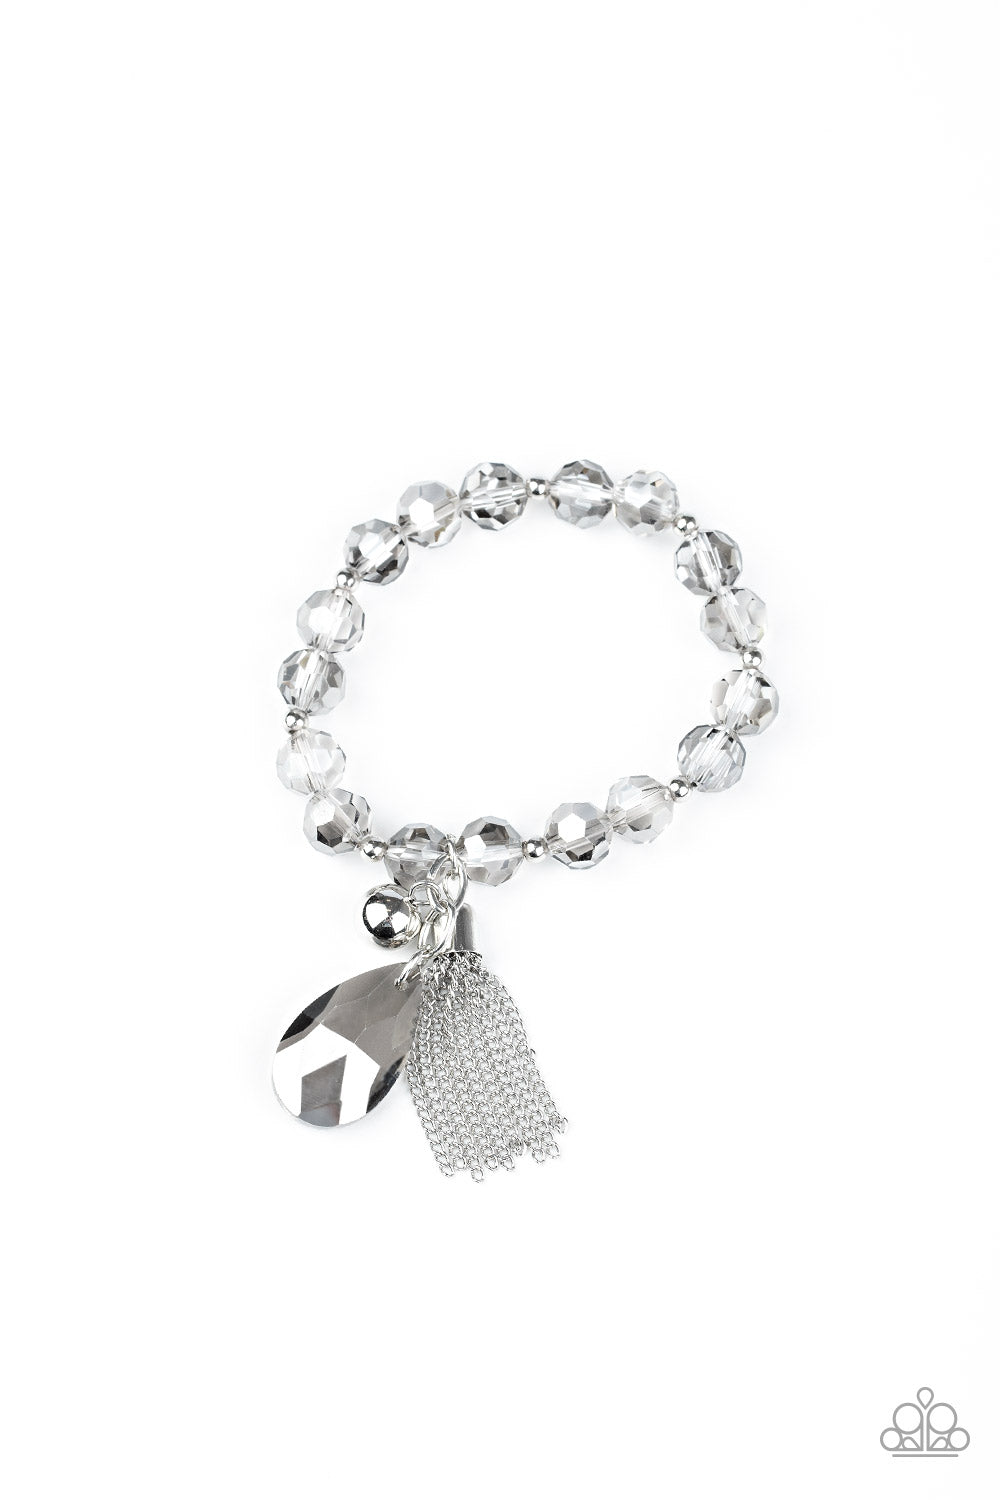 Leaving So SWOON? - Silver bracelet 1636